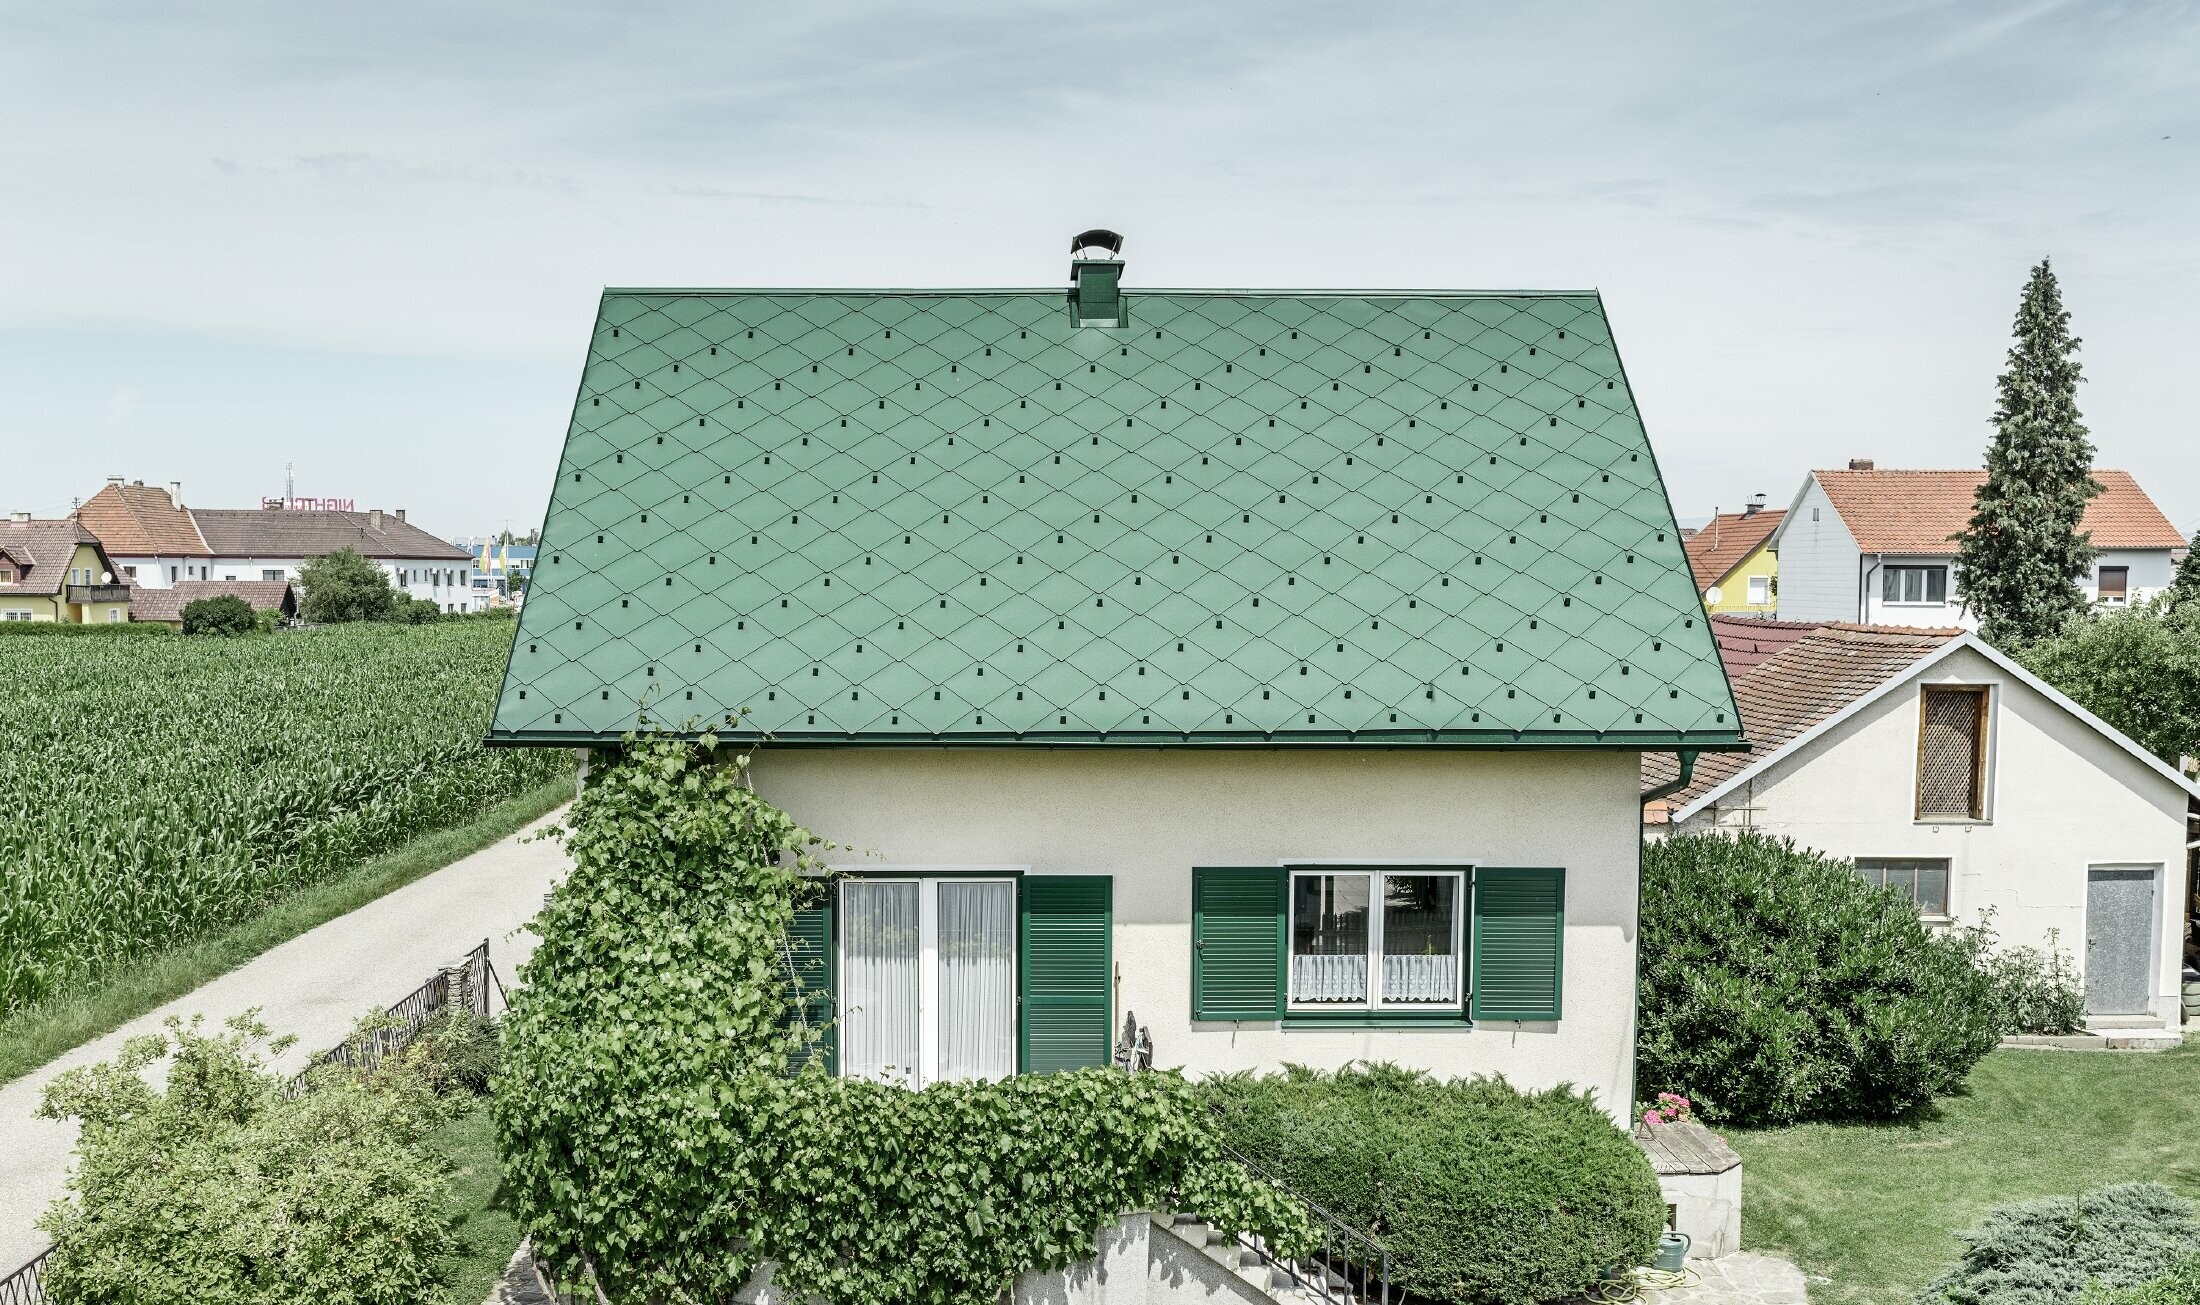 Klasický rodinný dom so sedlovou strechou so strešnou krytinou z hliníka vo farbe machovozelená so zelenými okenicami. Strecha bola pokrytá PREFA strešnými šablónami 44 × 44 vo farbe P.10 machovozelená.